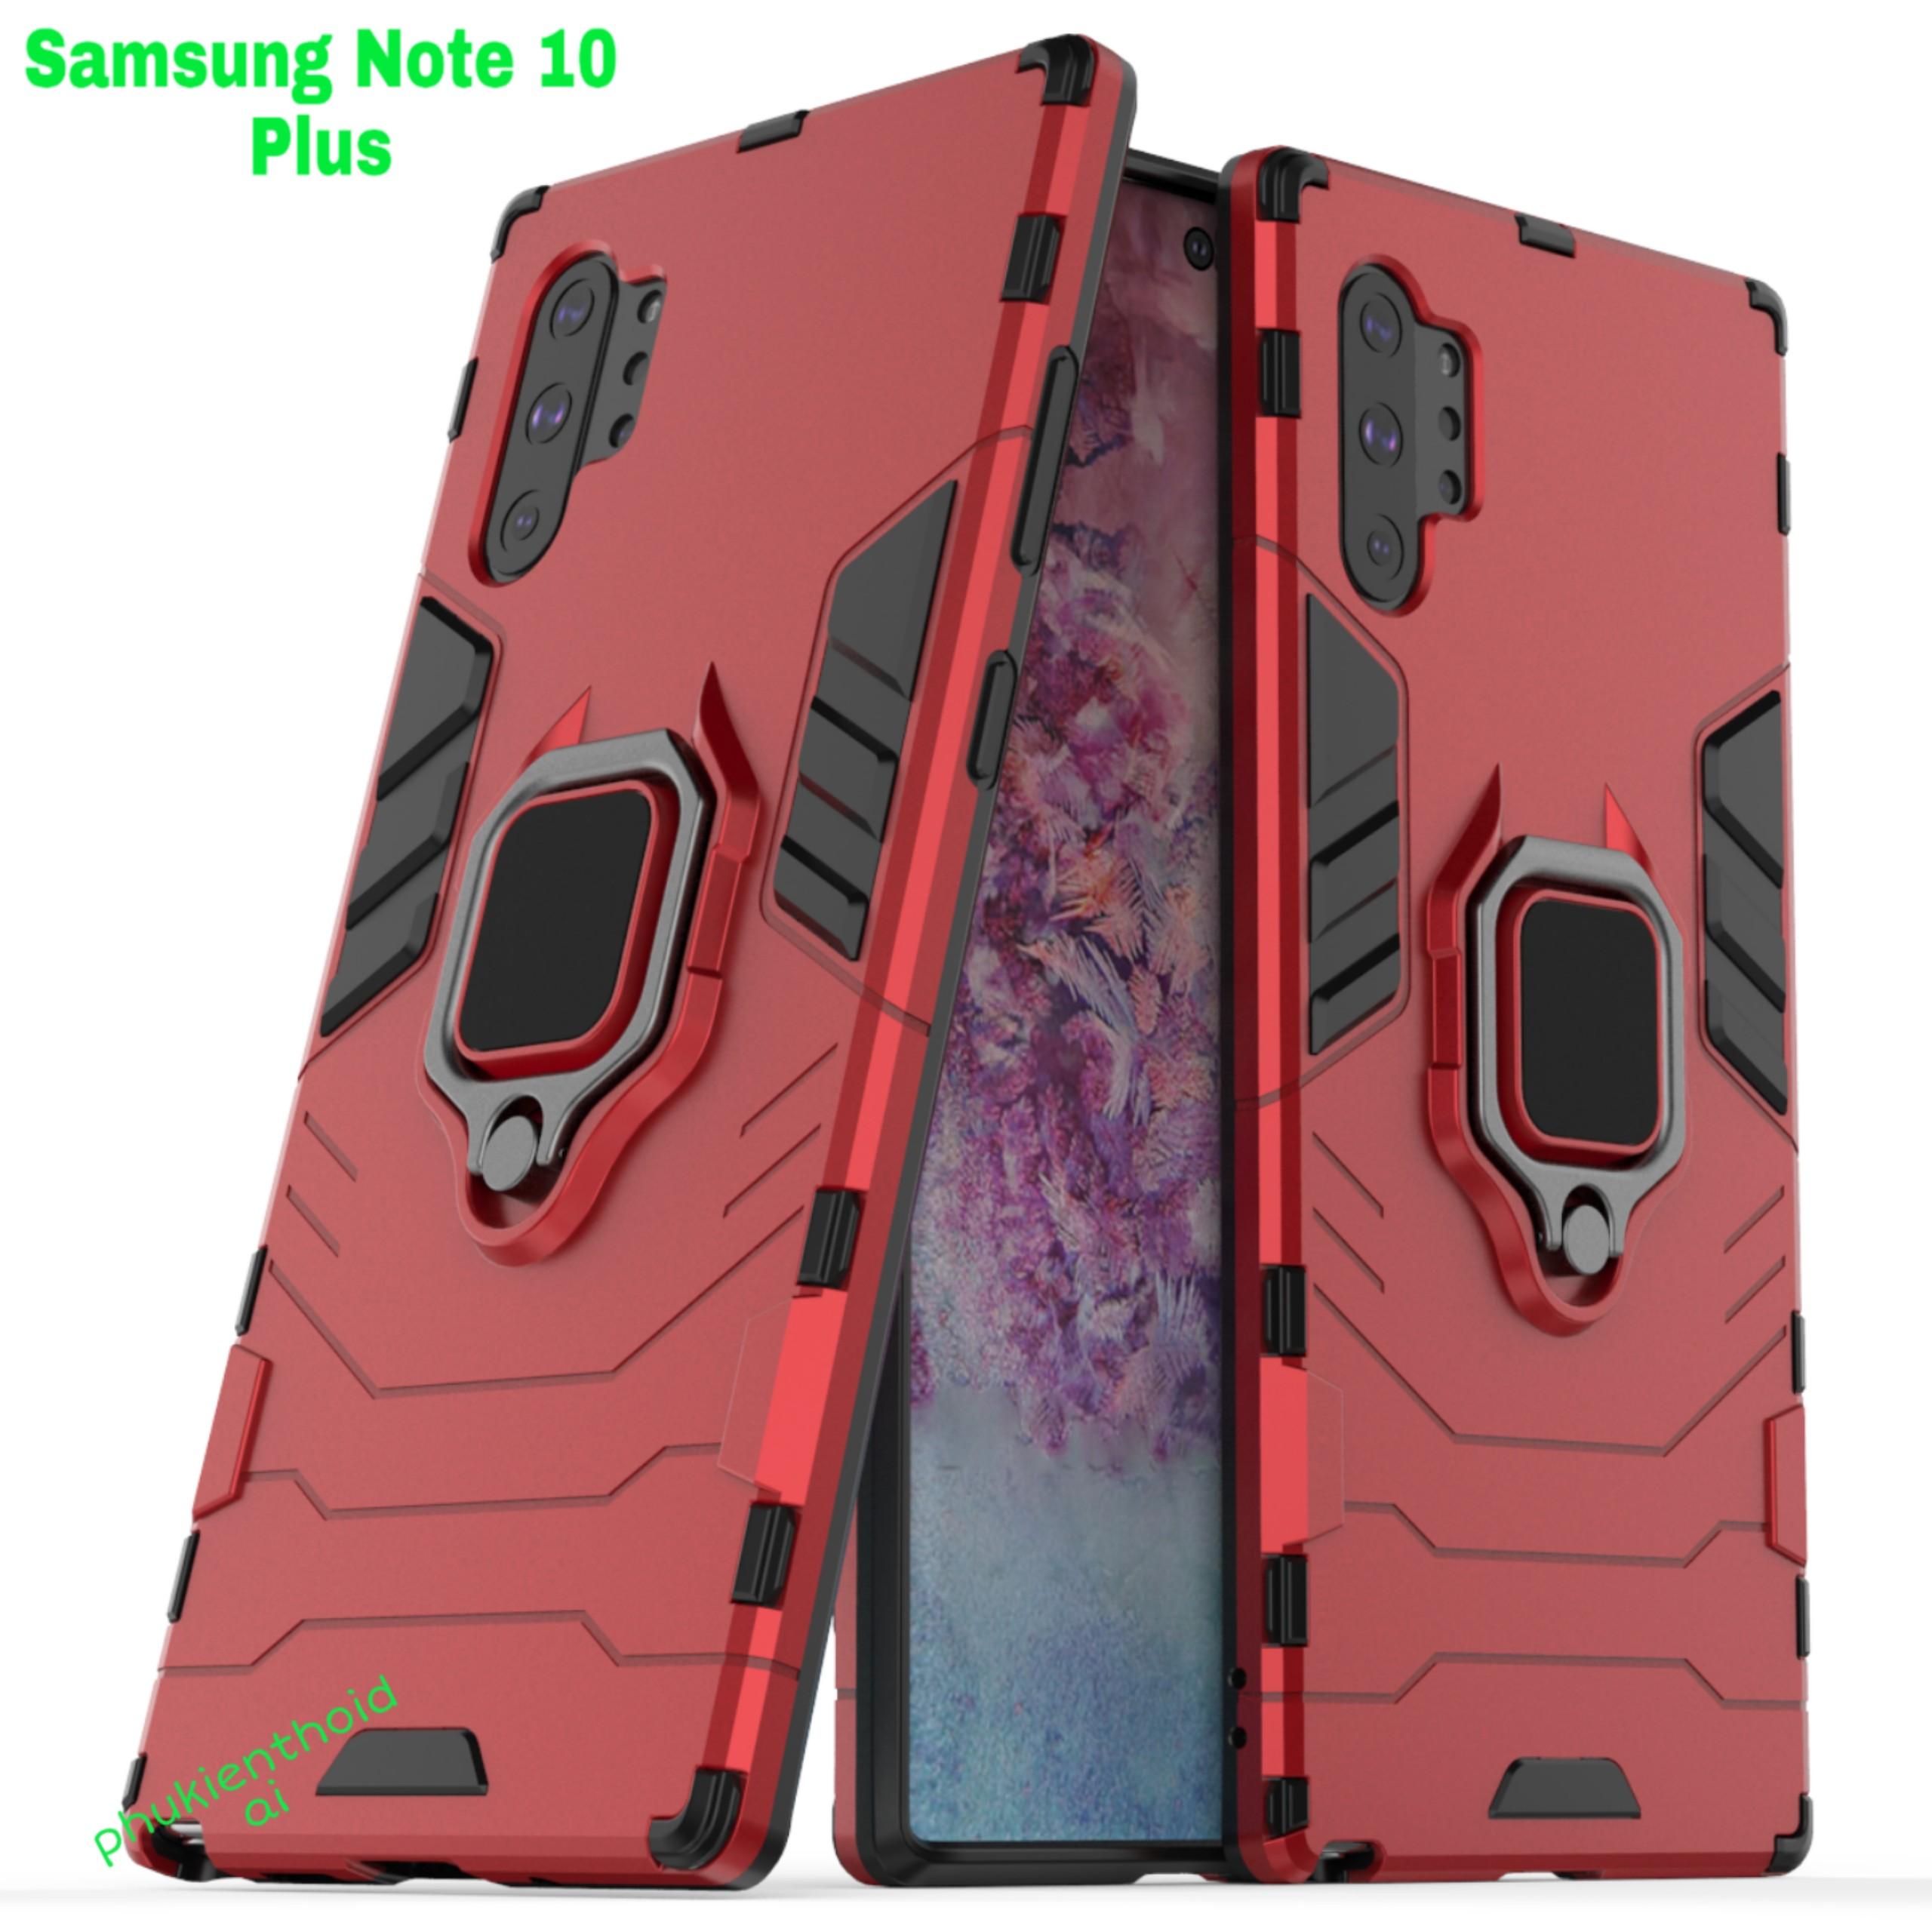 Ốp lưng Samsung Galaxy Note 10 Plus chống sốc Iron Man Iring cao cấp siêu